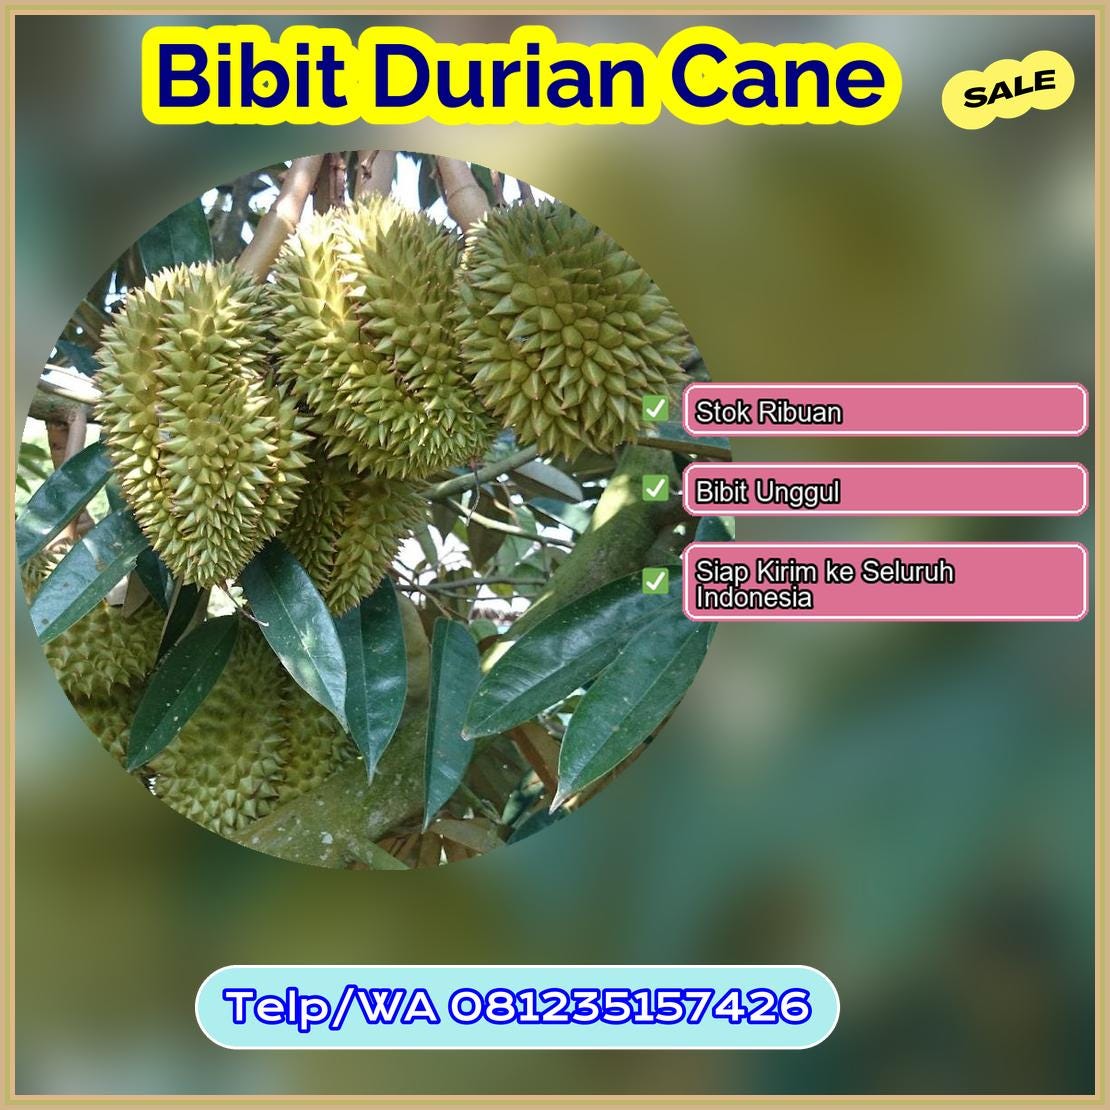 Grosir Bibit Durian Cane Tapin